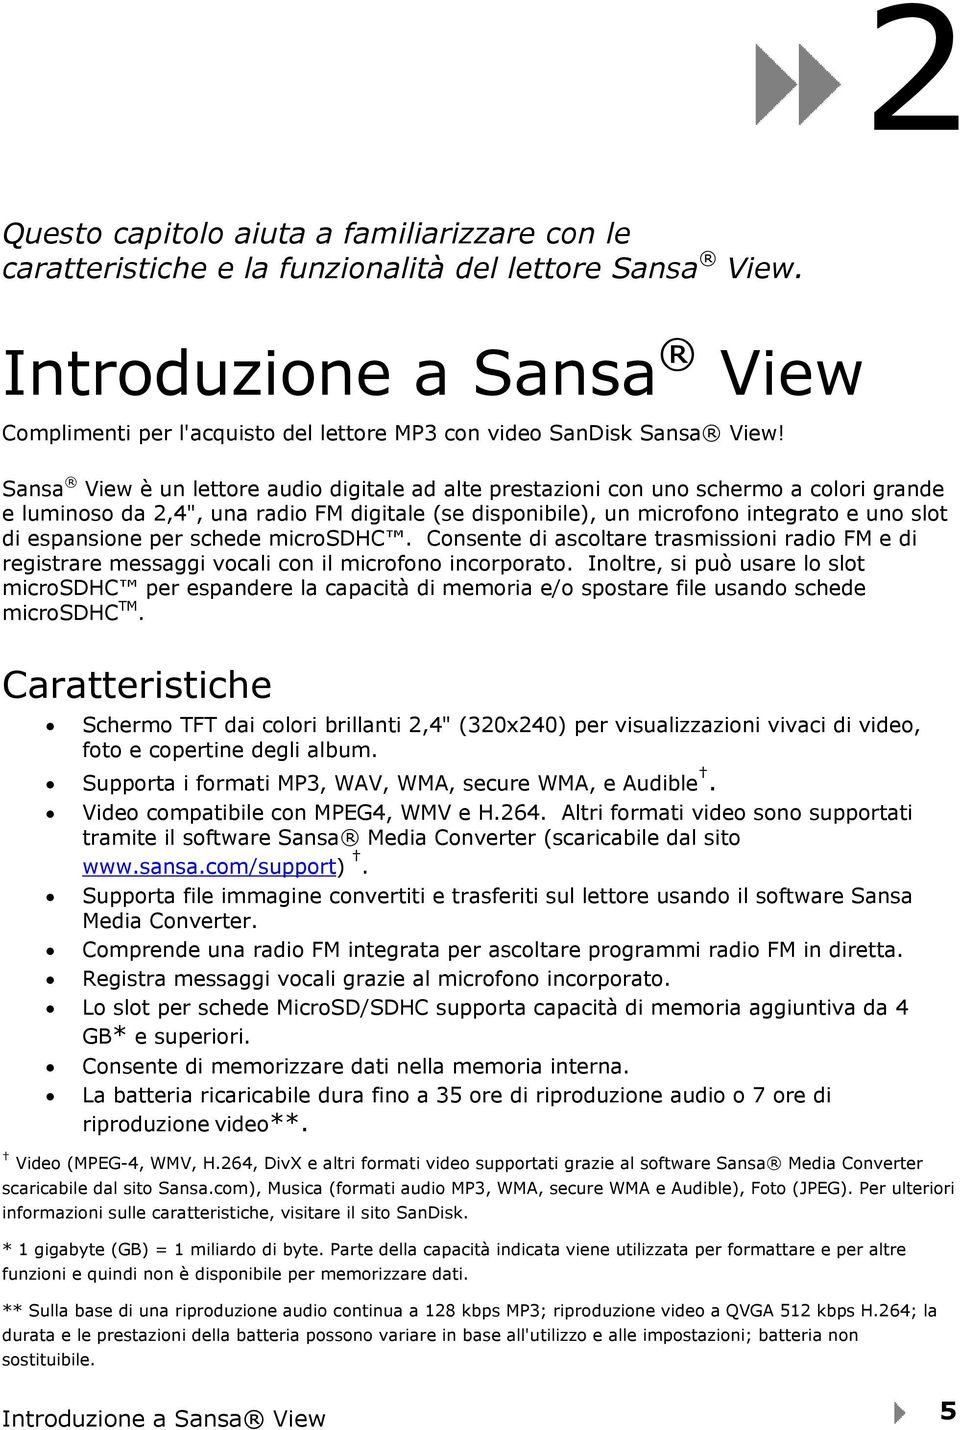 Sansa View è un lettore audio digitale ad alte prestazioni con uno schermo a colori grande e luminoso da 2,4", una radio FM digitale (se disponibile), un microfono integrato e uno slot di espansione